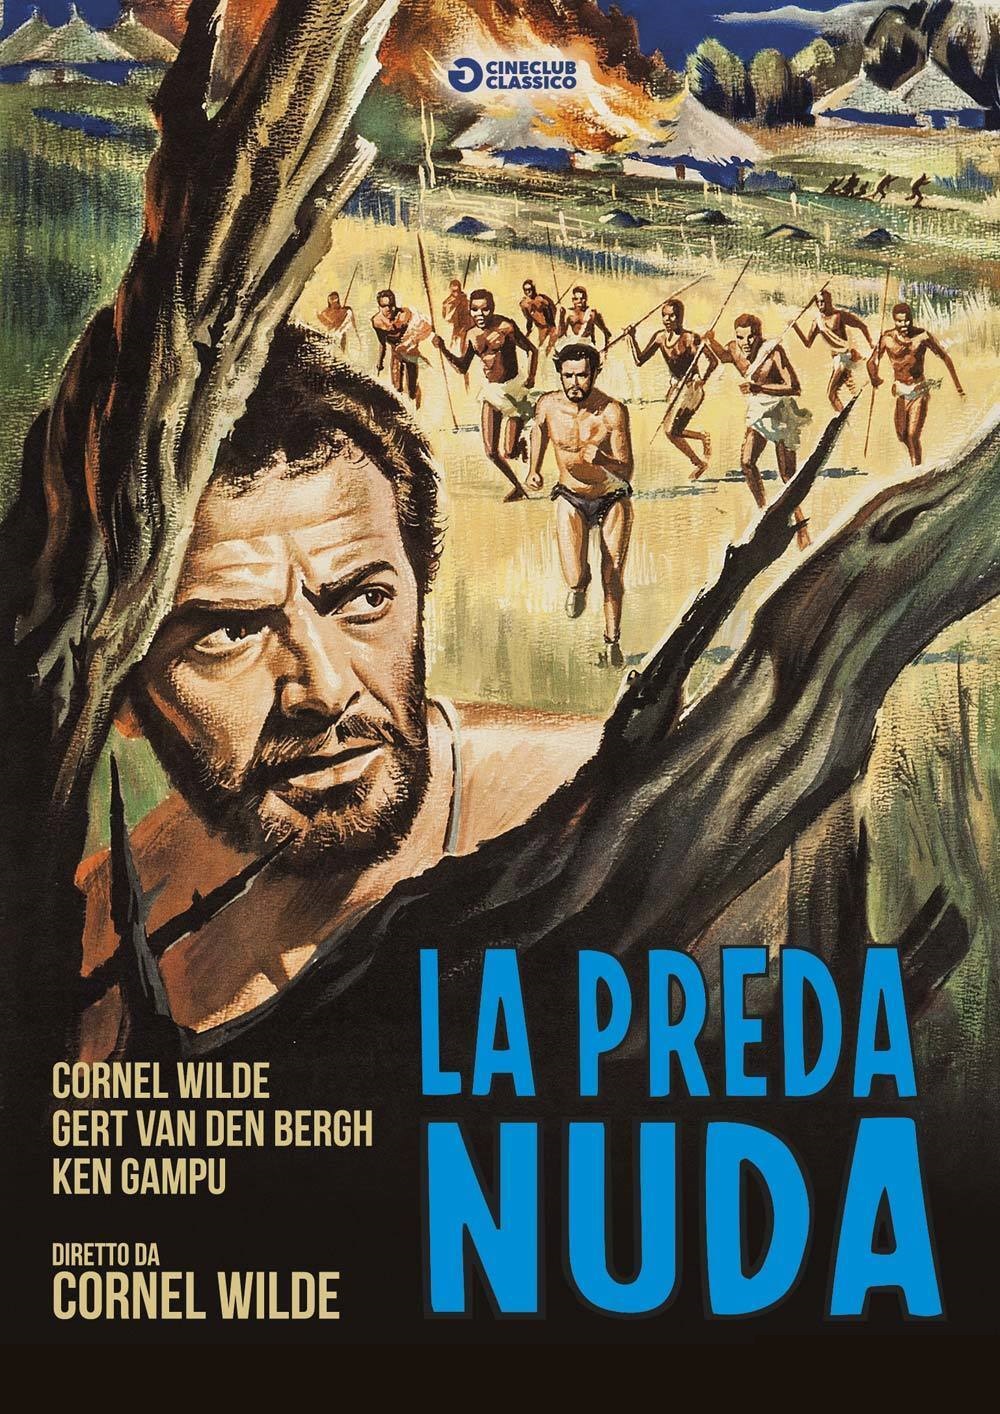 La preda nuda (1966)